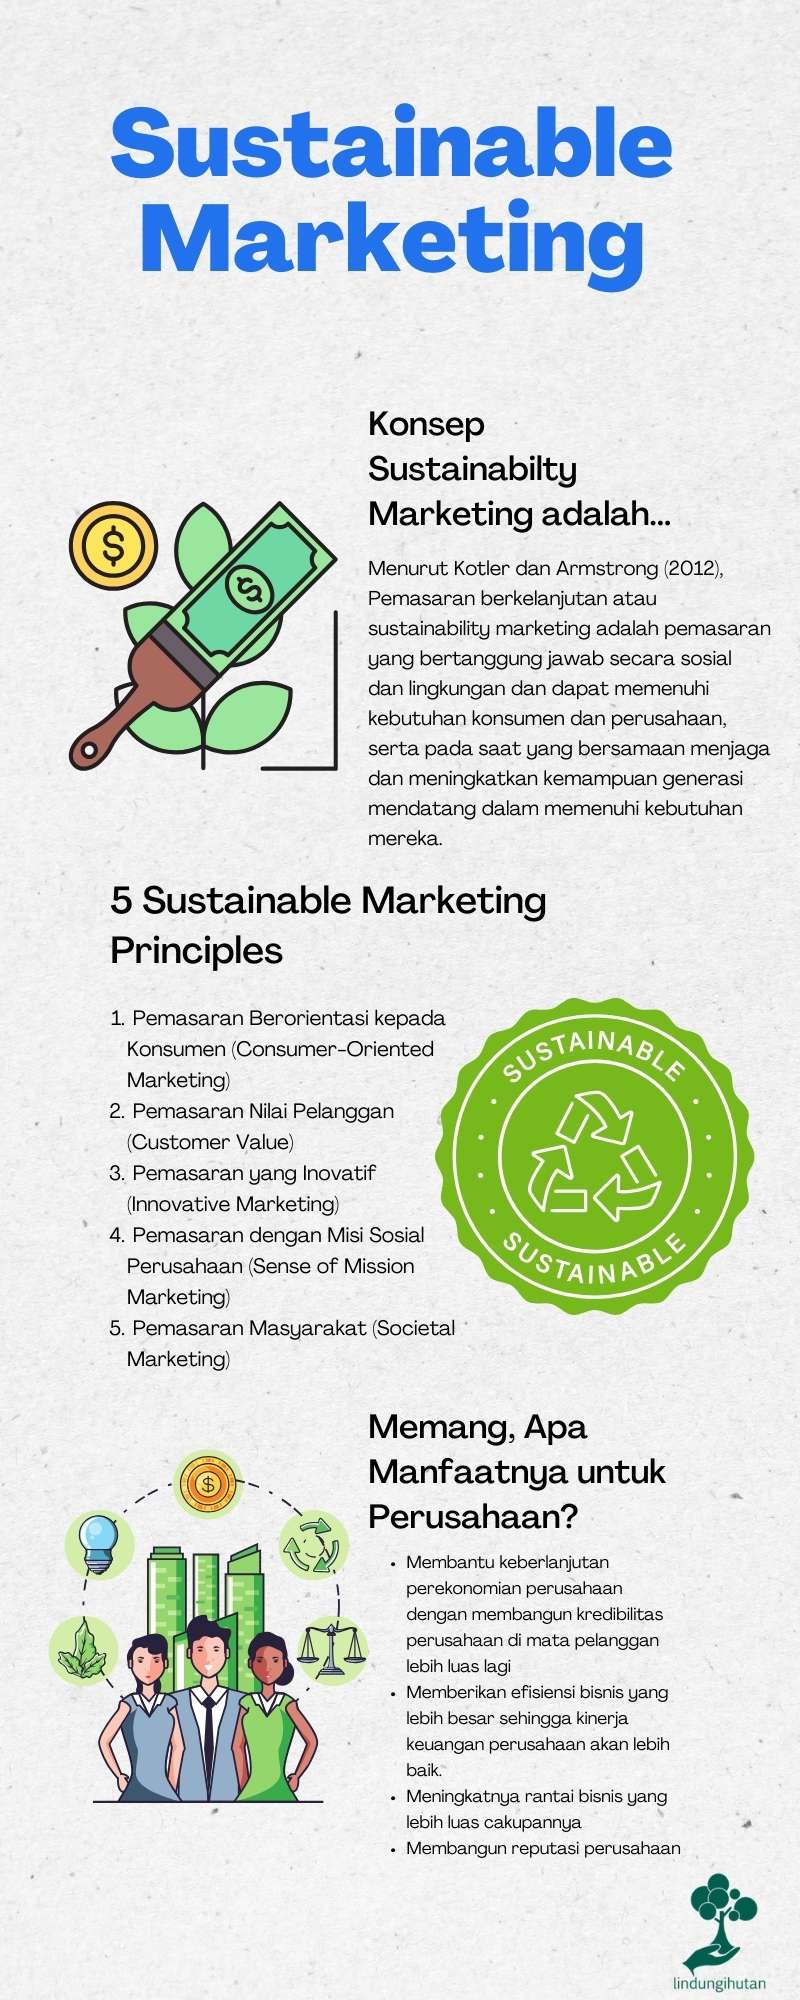 Sustainability marketing